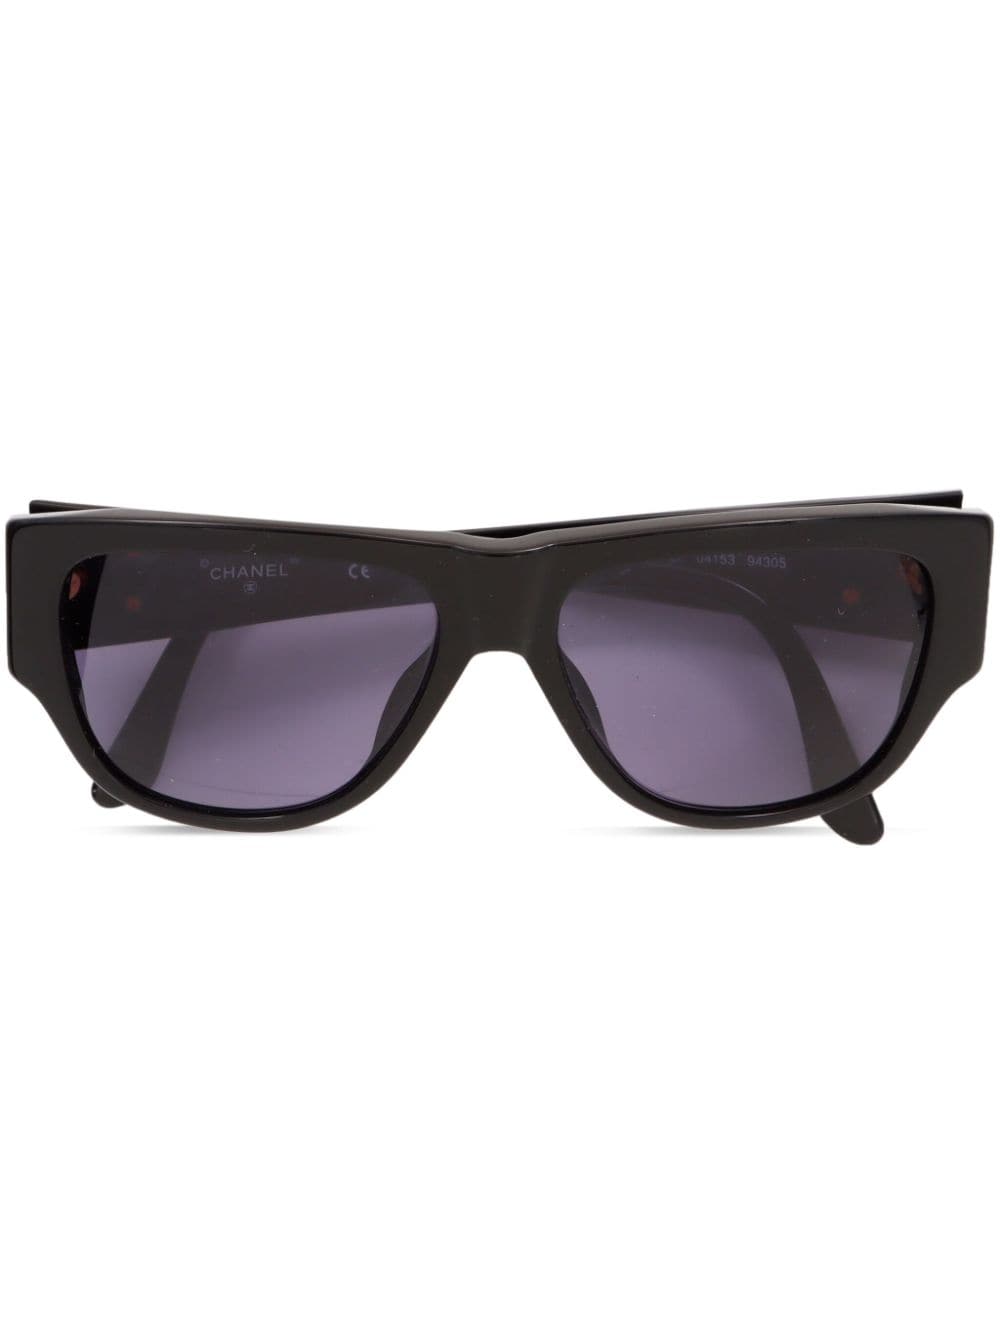 CHANEL Pre-Owned 2000s CC plaque shield sunglasses - Black